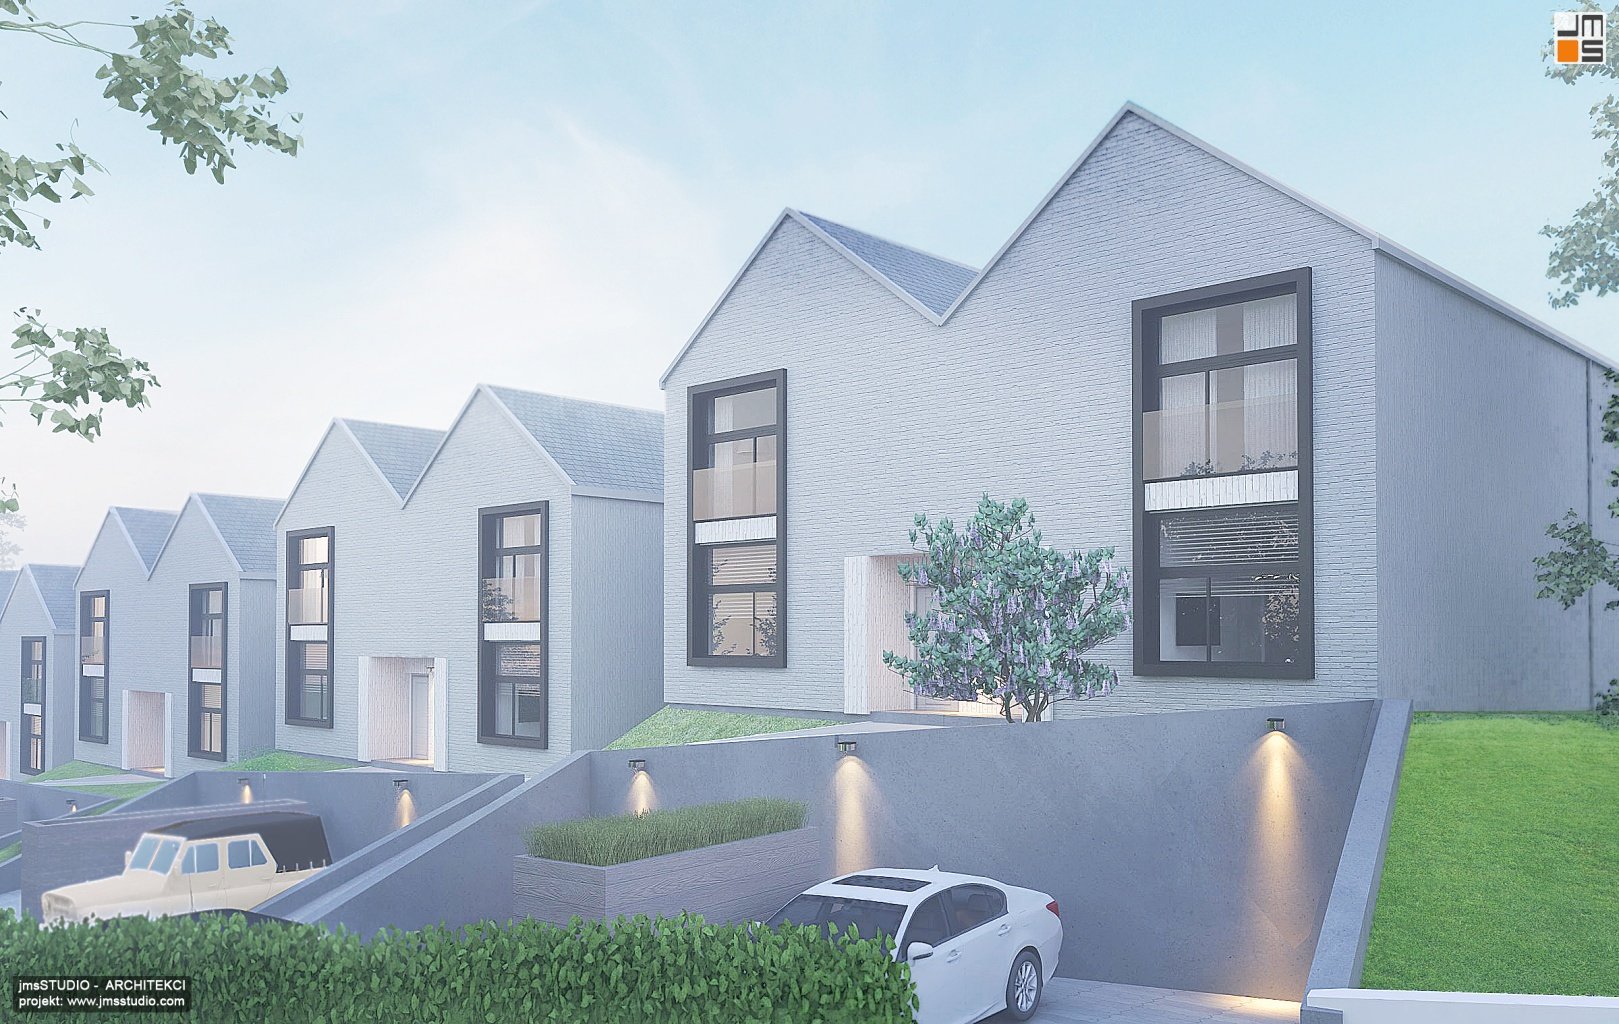 Elegancka elewacja z białej cegły z czarnymi akcentami to projekt nowoczesnego osiedla domów typu bliźniak pod Krakowem z prostymi bryłami i dachami dwuspadowymi na działce ze spadkiem